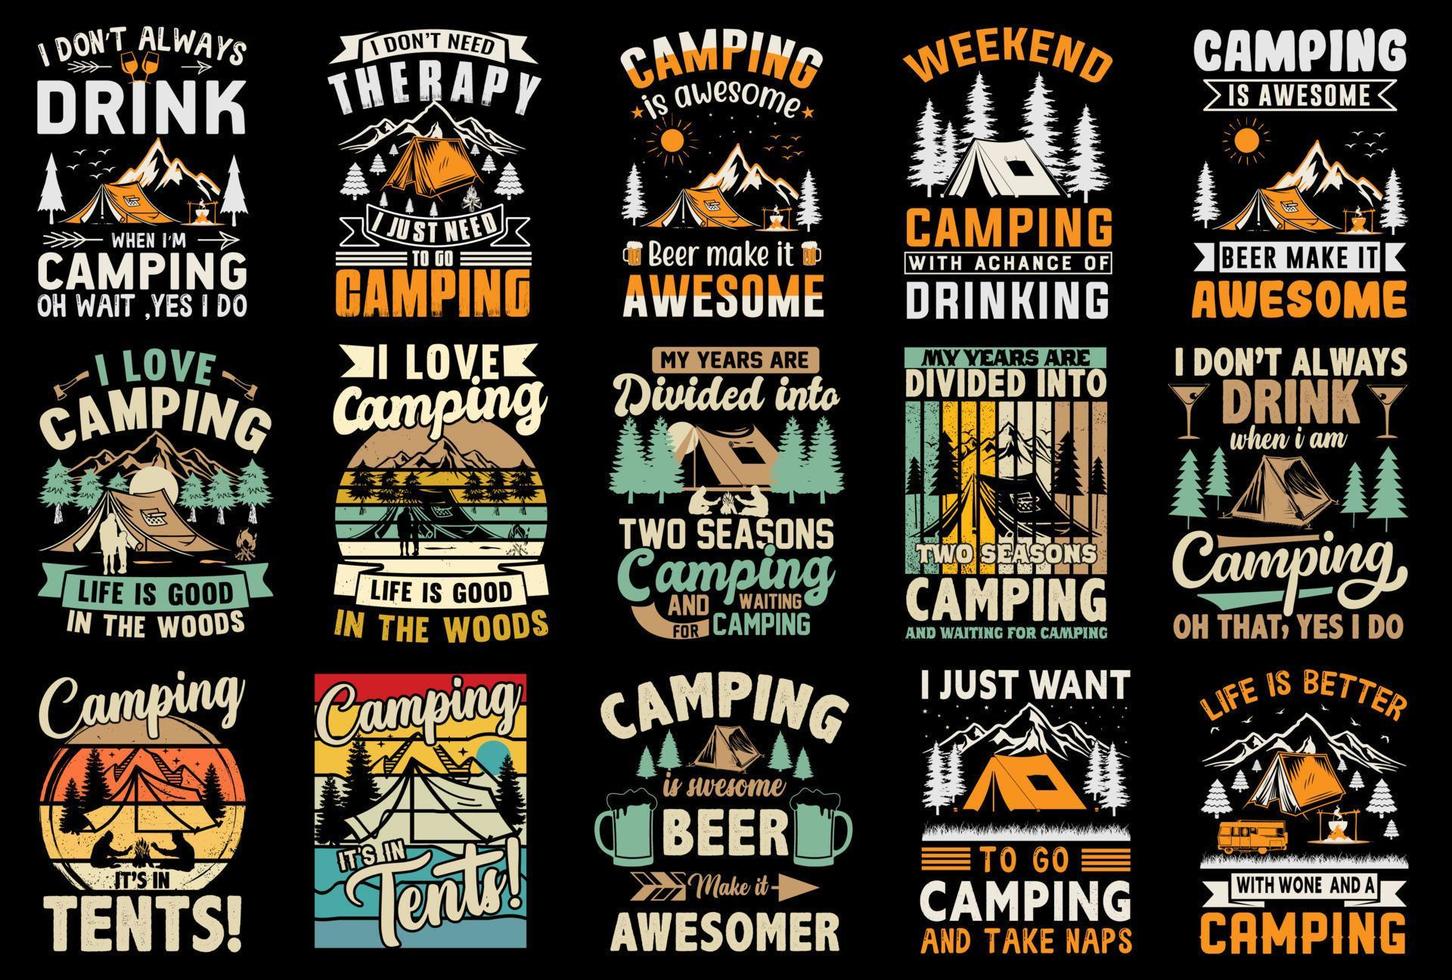 paquete de diseño de camiseta de camping gratis, elemento de vector de camping gratis, diseño de camiseta de campamento gratis